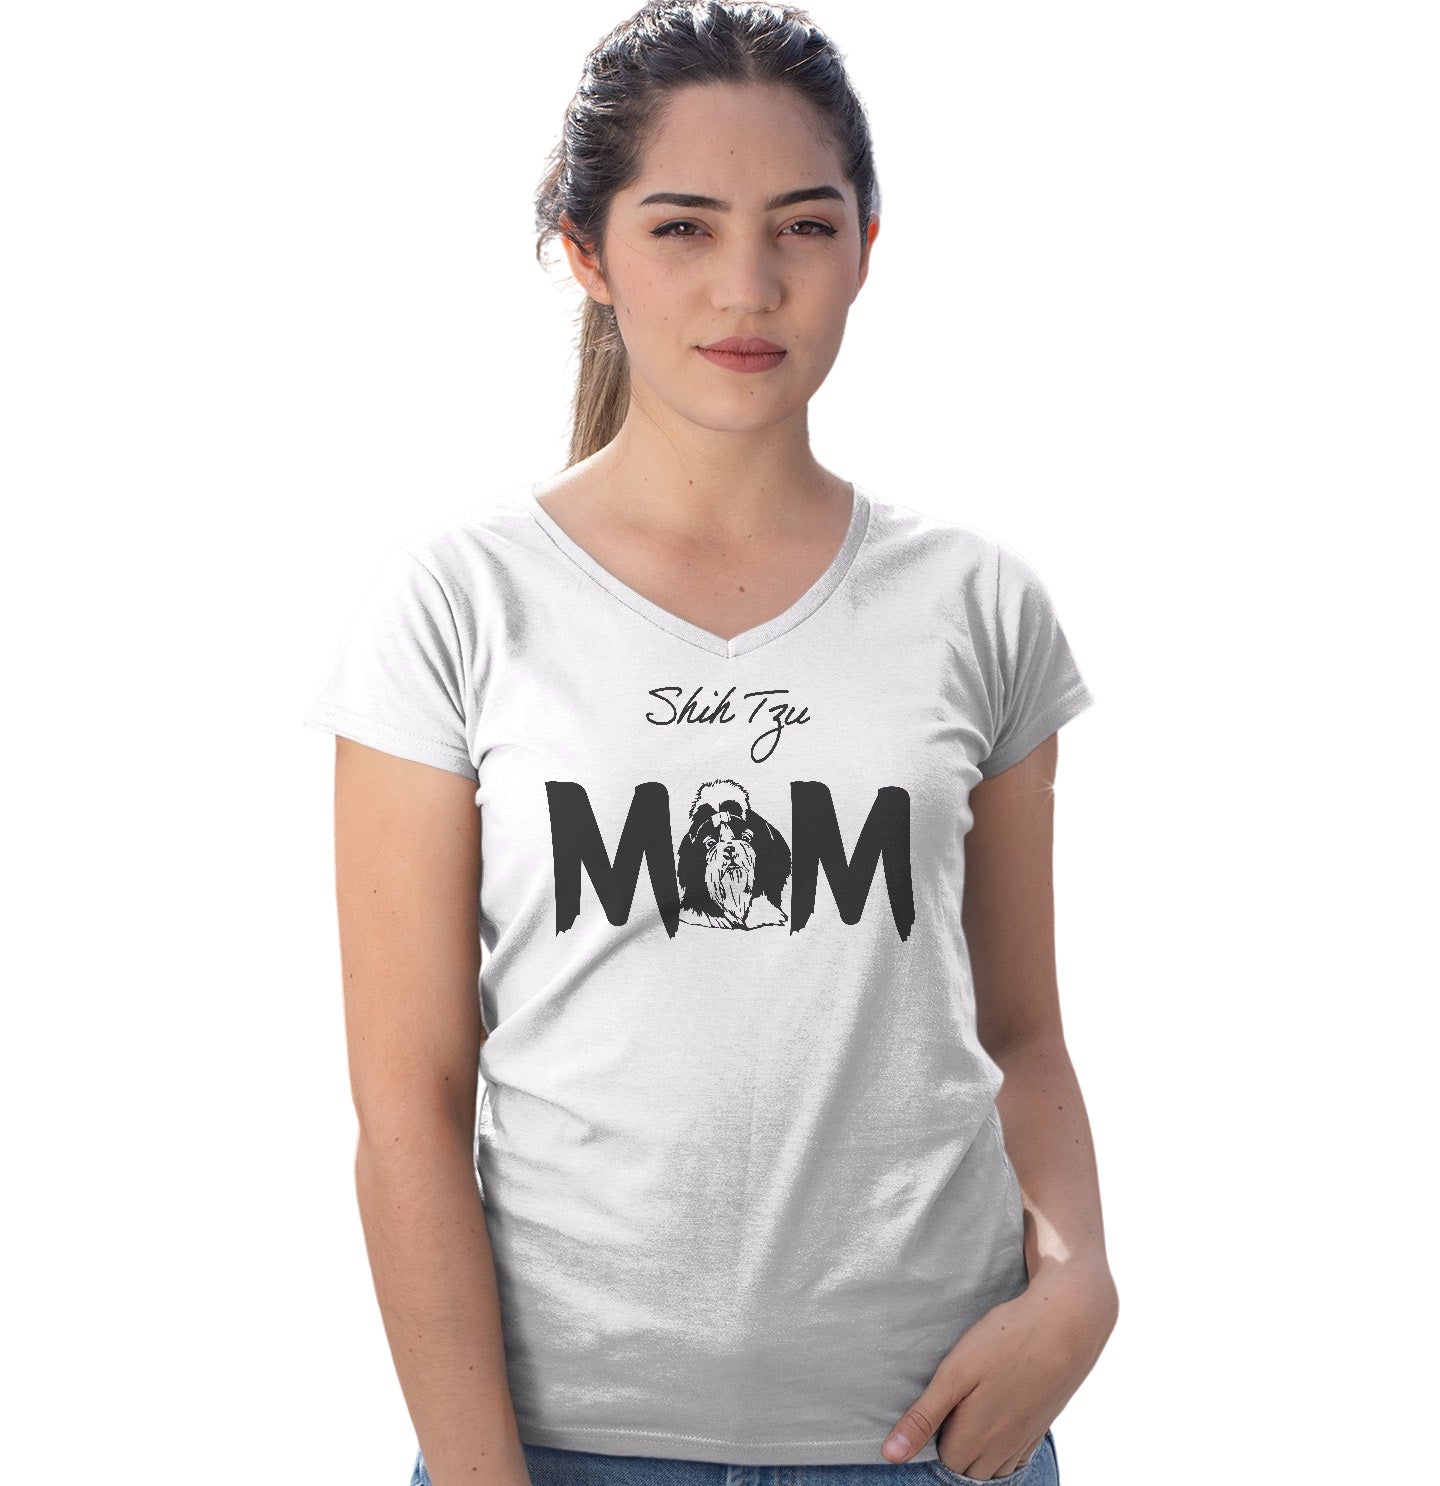 Shih Tzu Breed Mom - Women's V-Neck T-Shirt